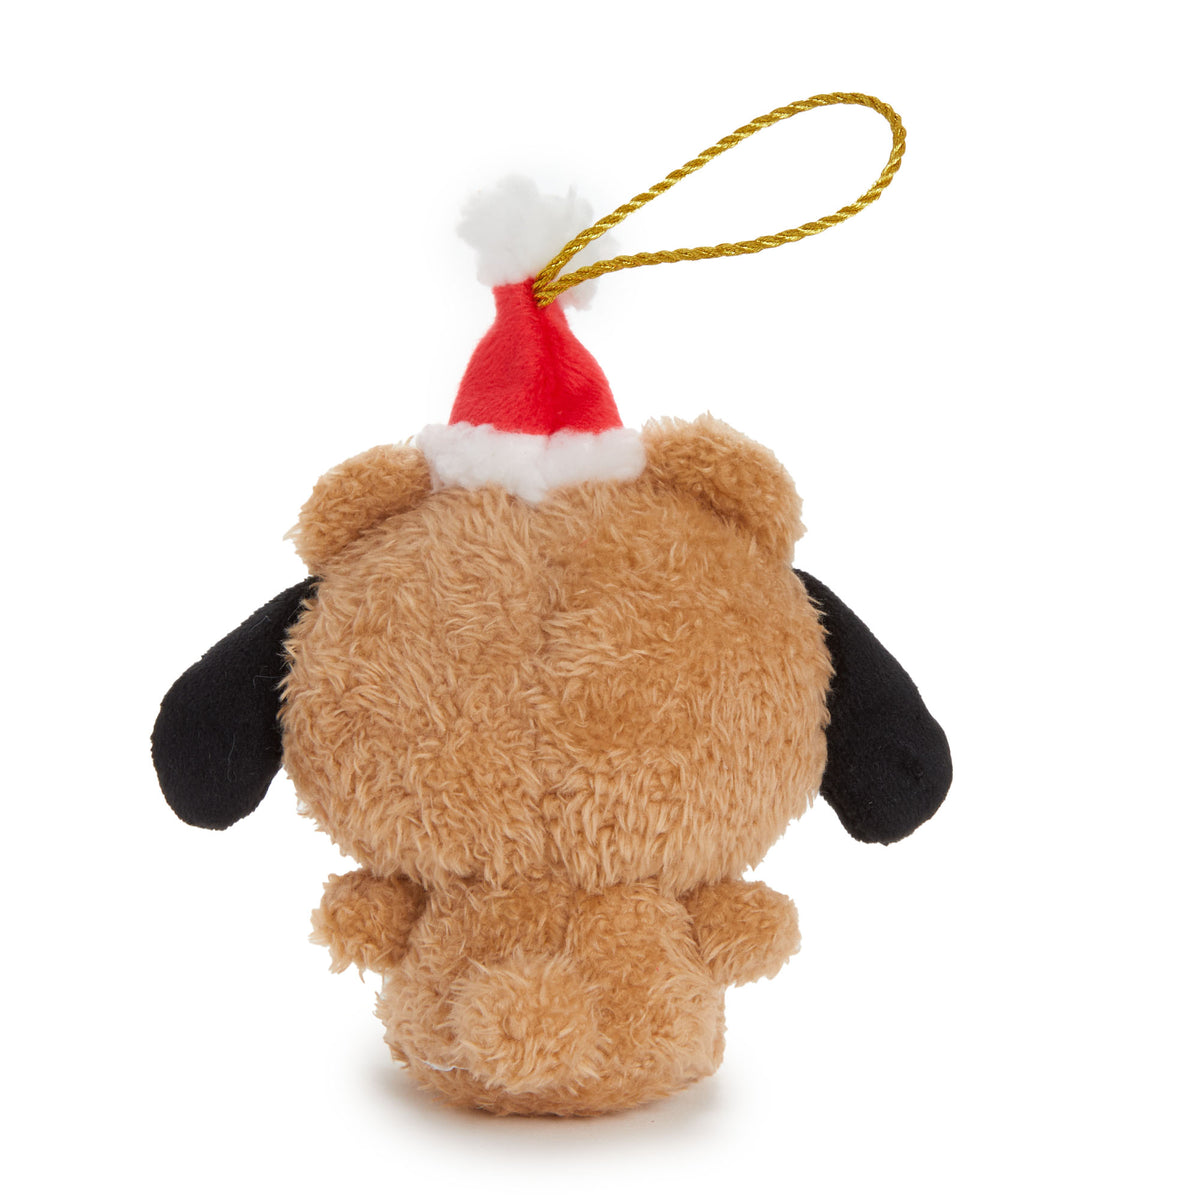 Pochacco Teddy Plush Holiday Ornament Seasonal NAKAJIMA CORPORATION   